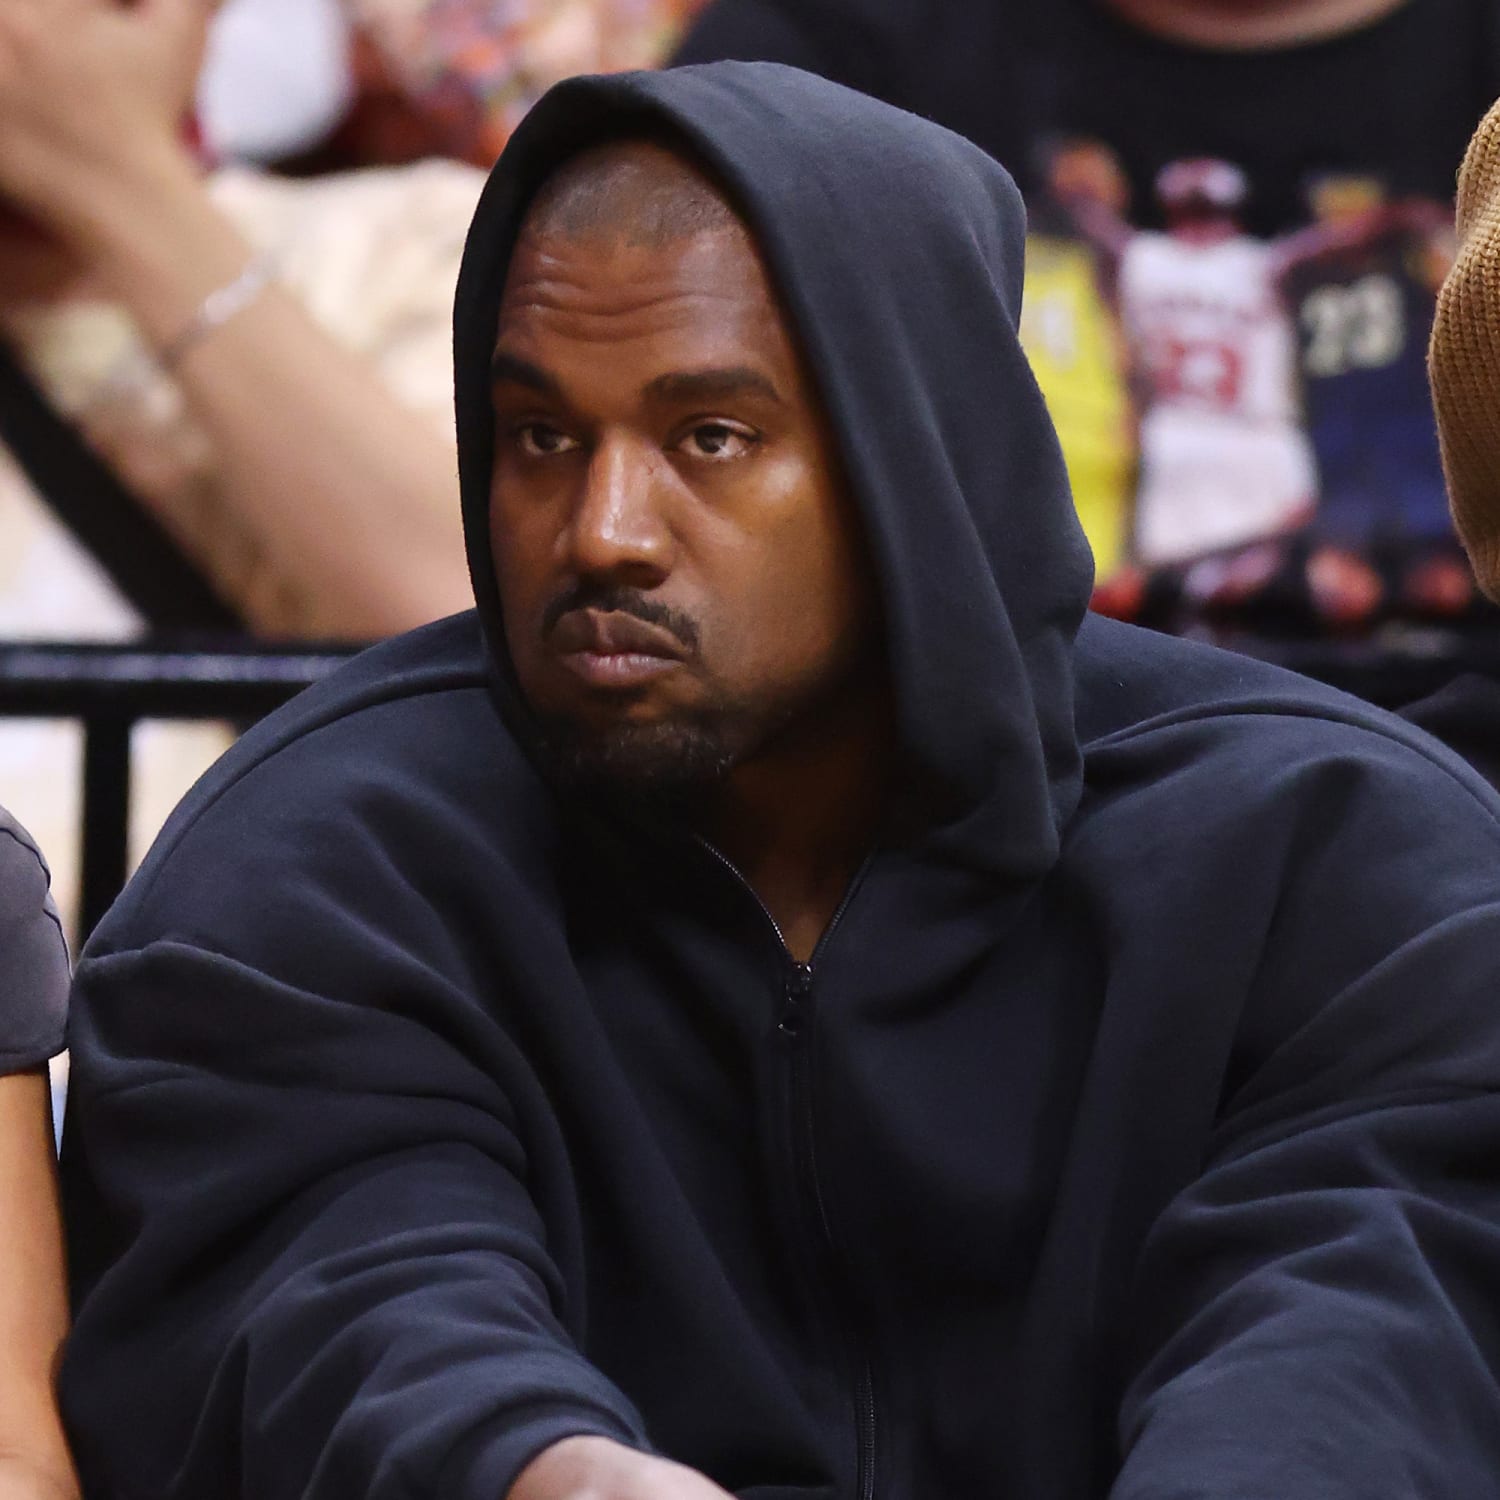 Kanye West's Twitter is no longer suspended : r/Kanye